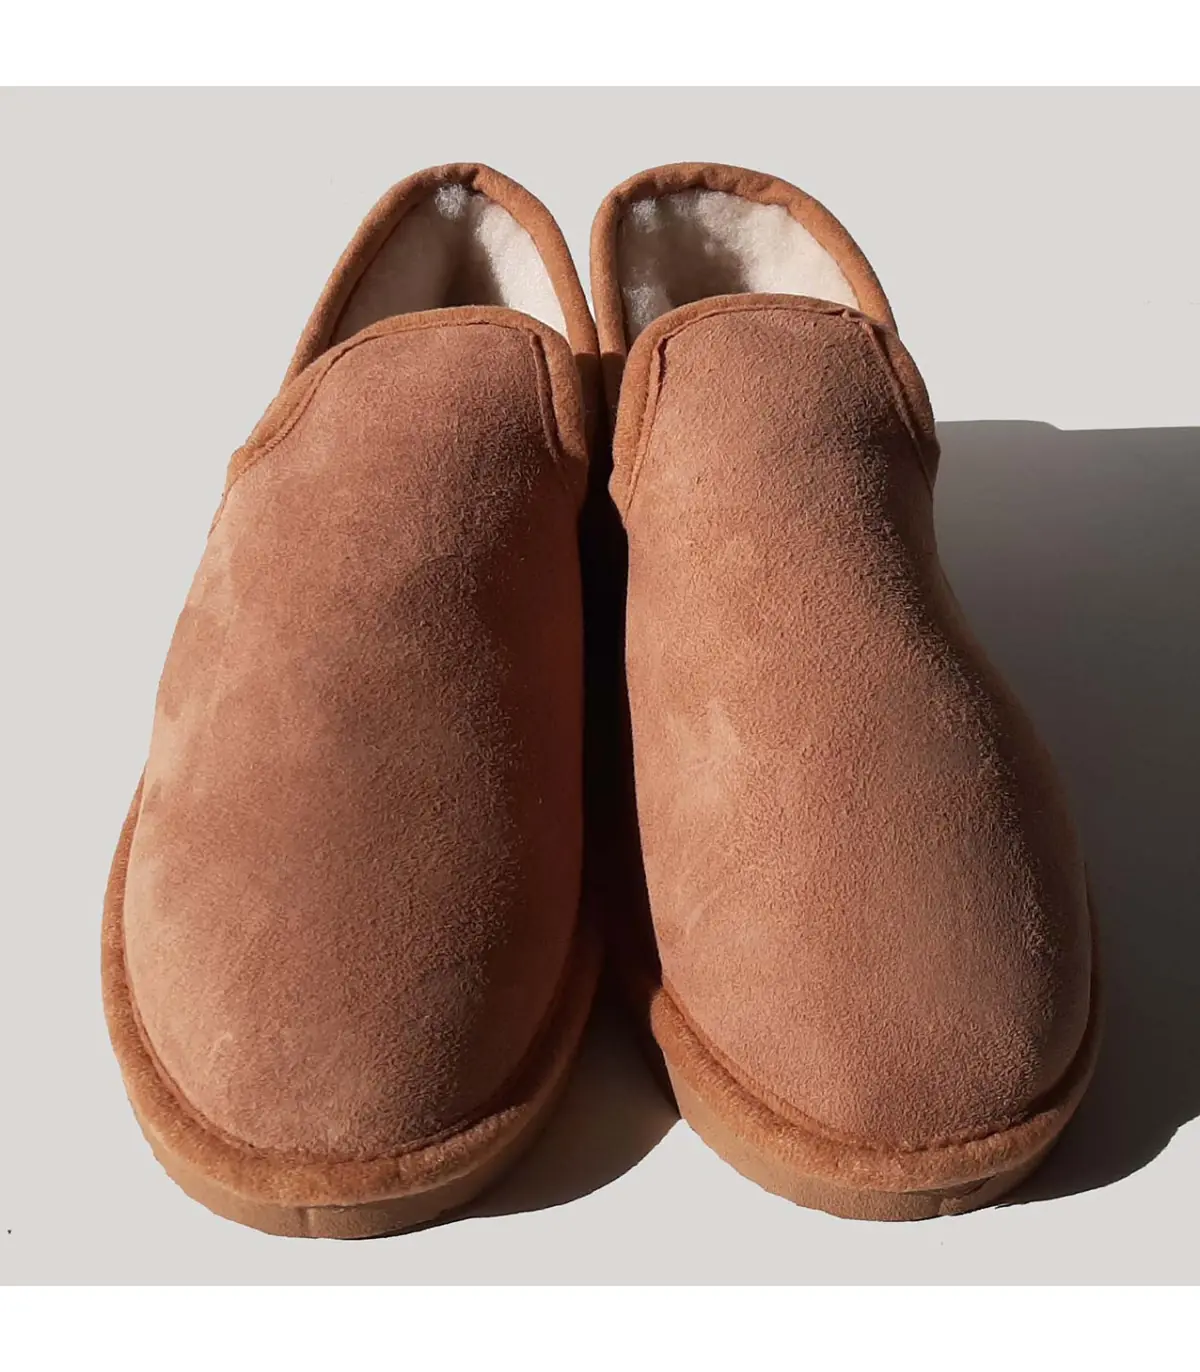 Calzado Natural - Natural Comfort trae una línea de calzado ultra